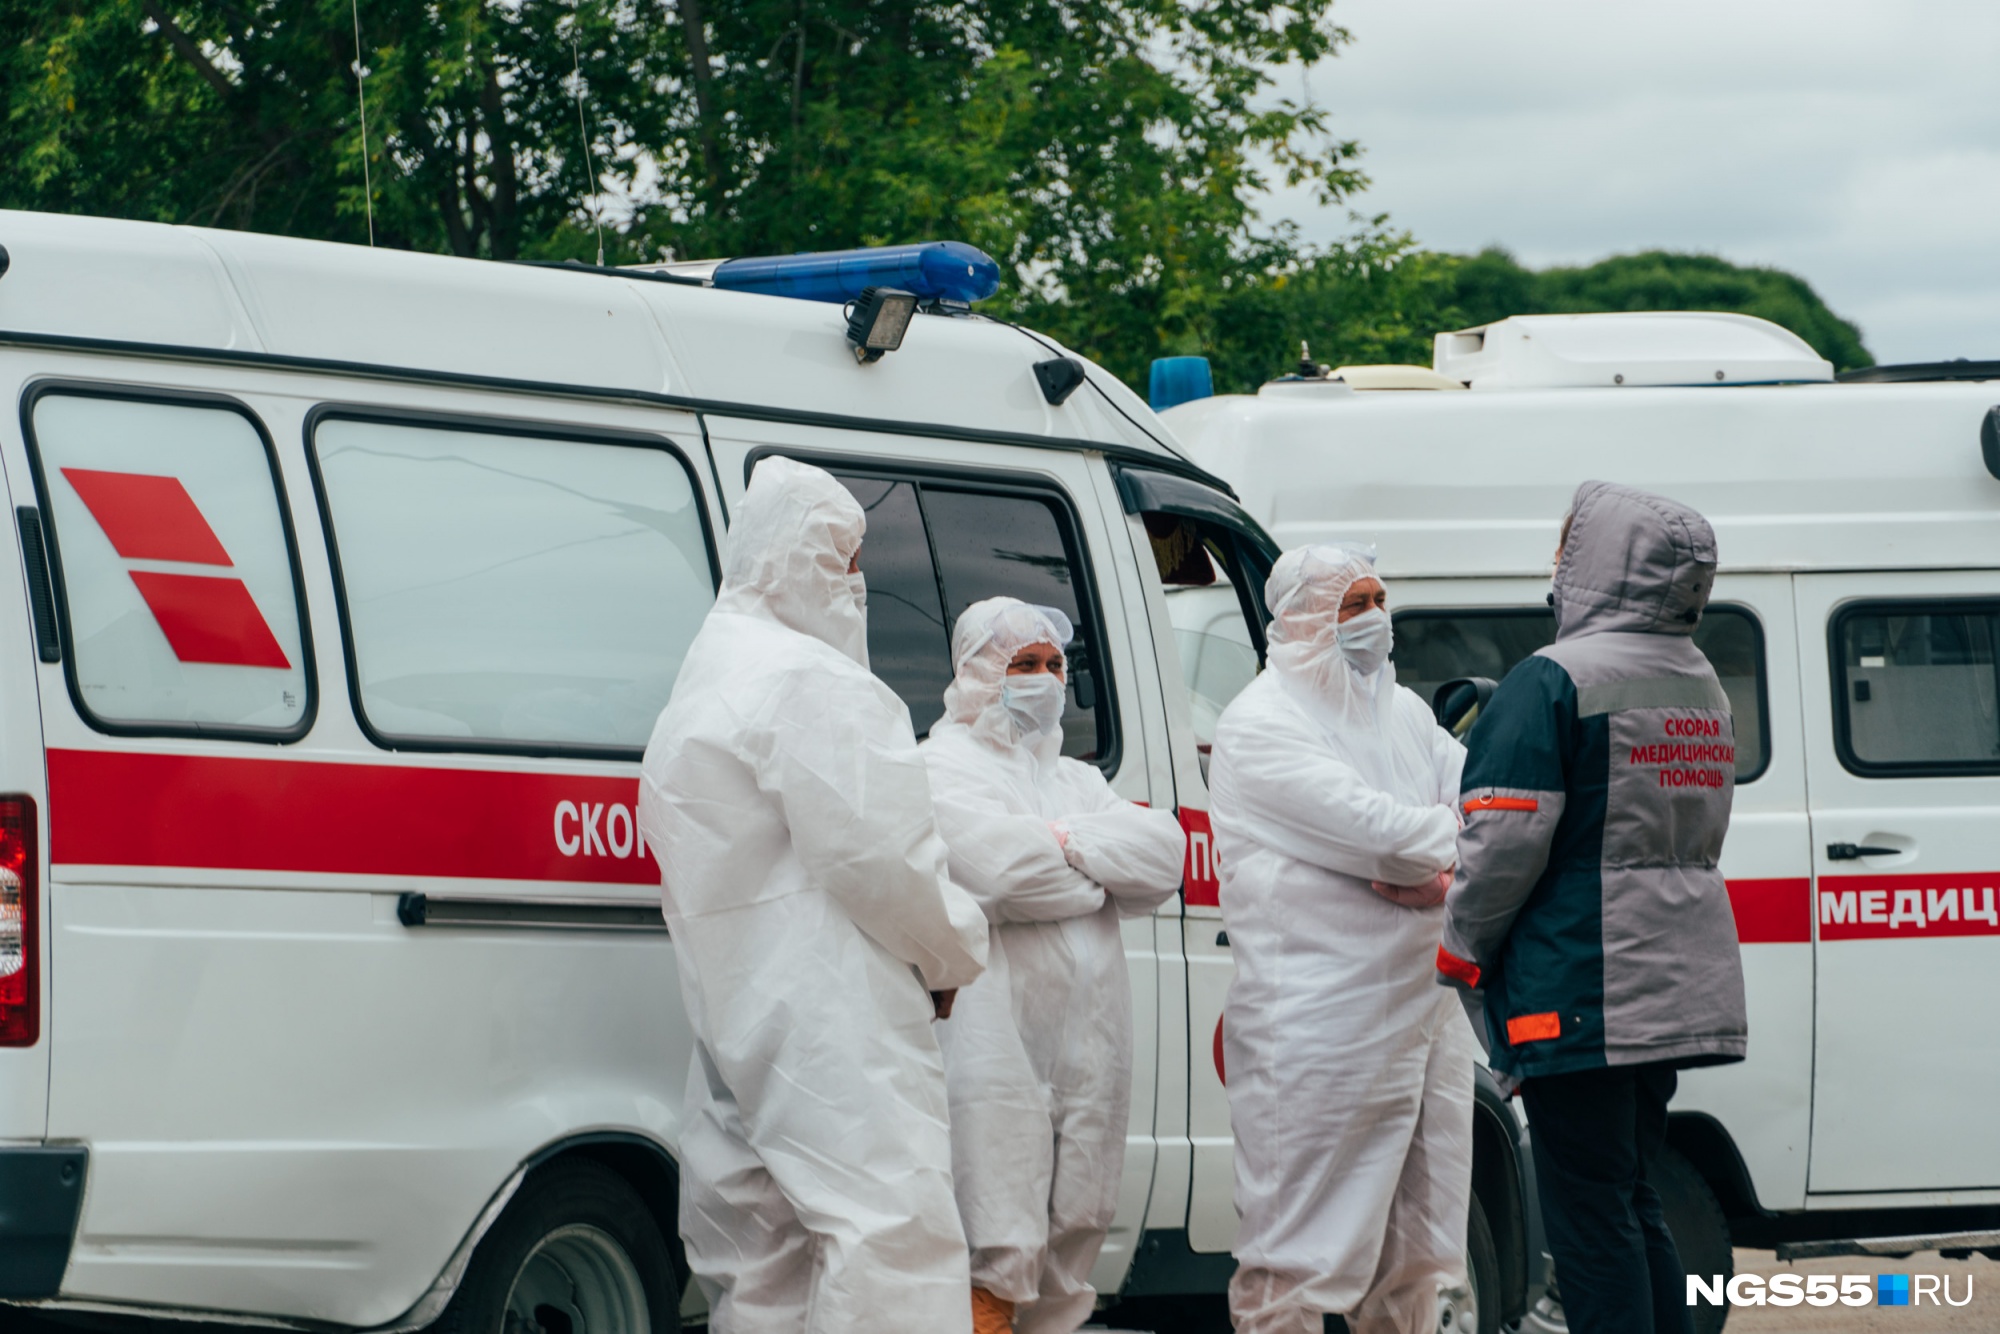 Количество заражённых COVID-19 в Омске за последние 10 дней уменьшилось в четыре раза